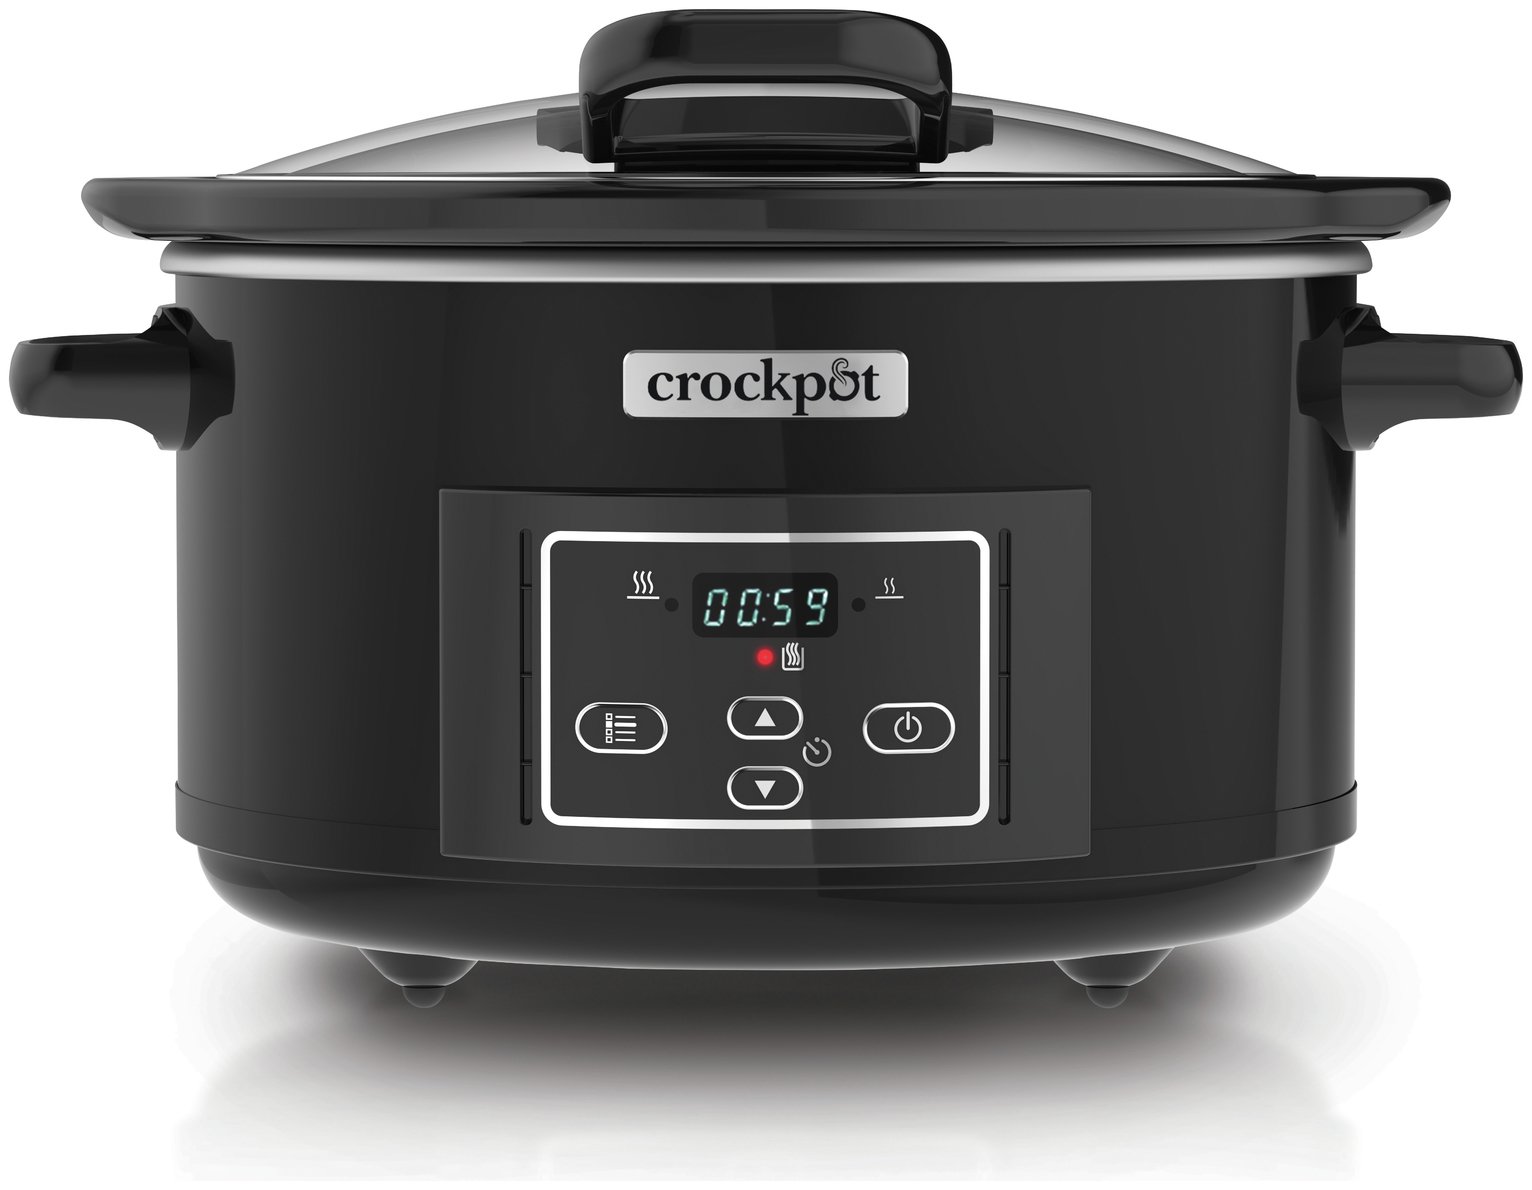 Crock-Pot 4.7L Slow Cooker review